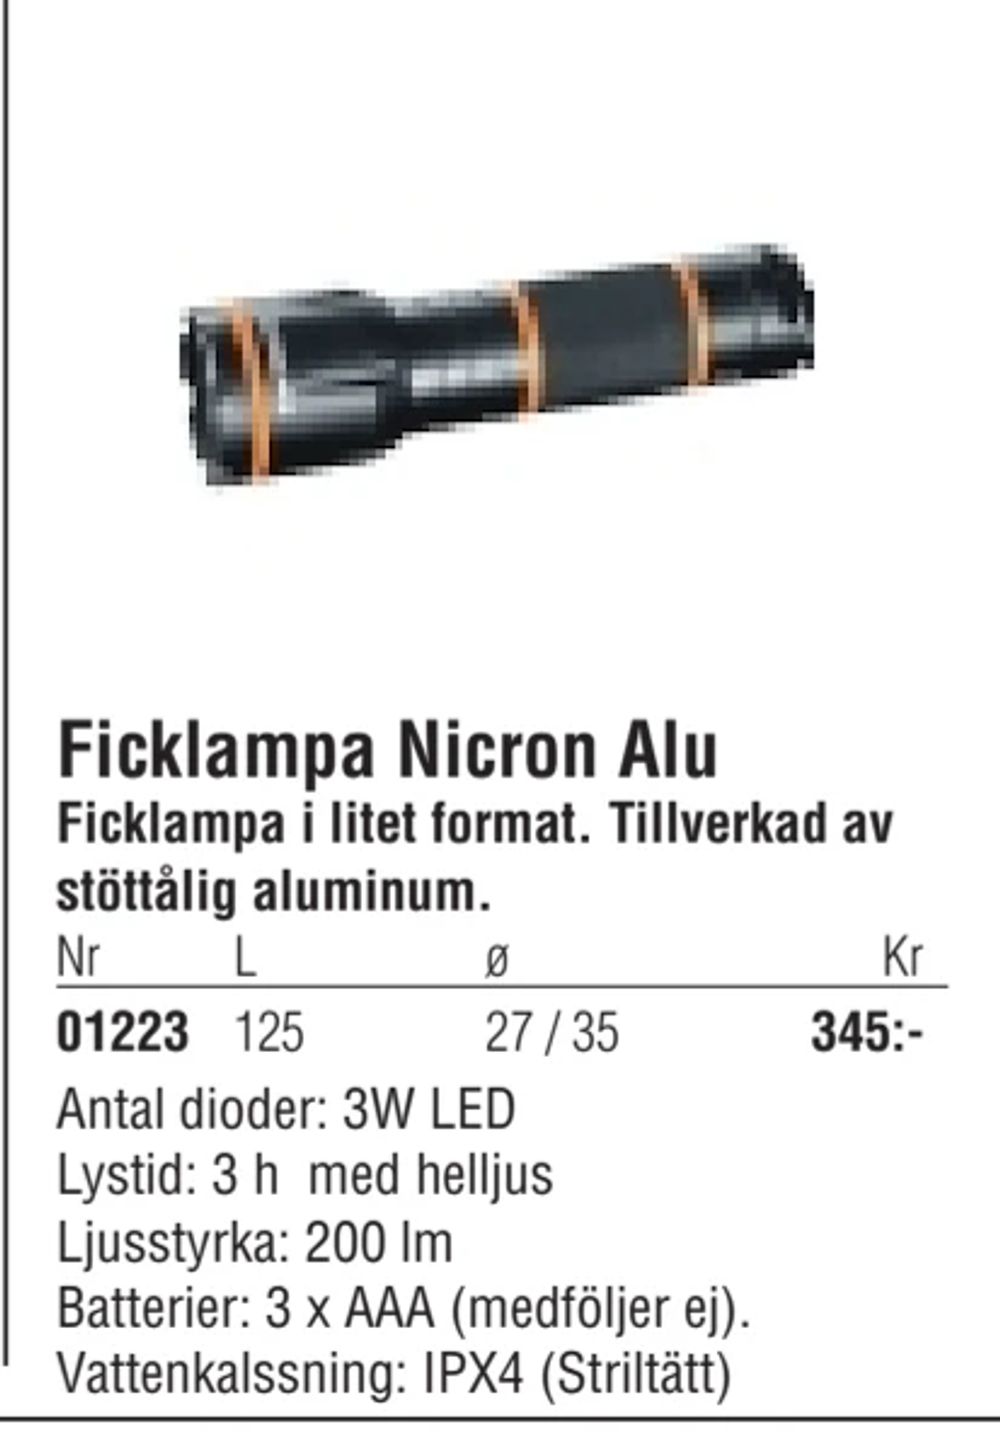 Erbjudanden på Ficklampa Nicron Alu från Erlandsons Brygga för 345 kr